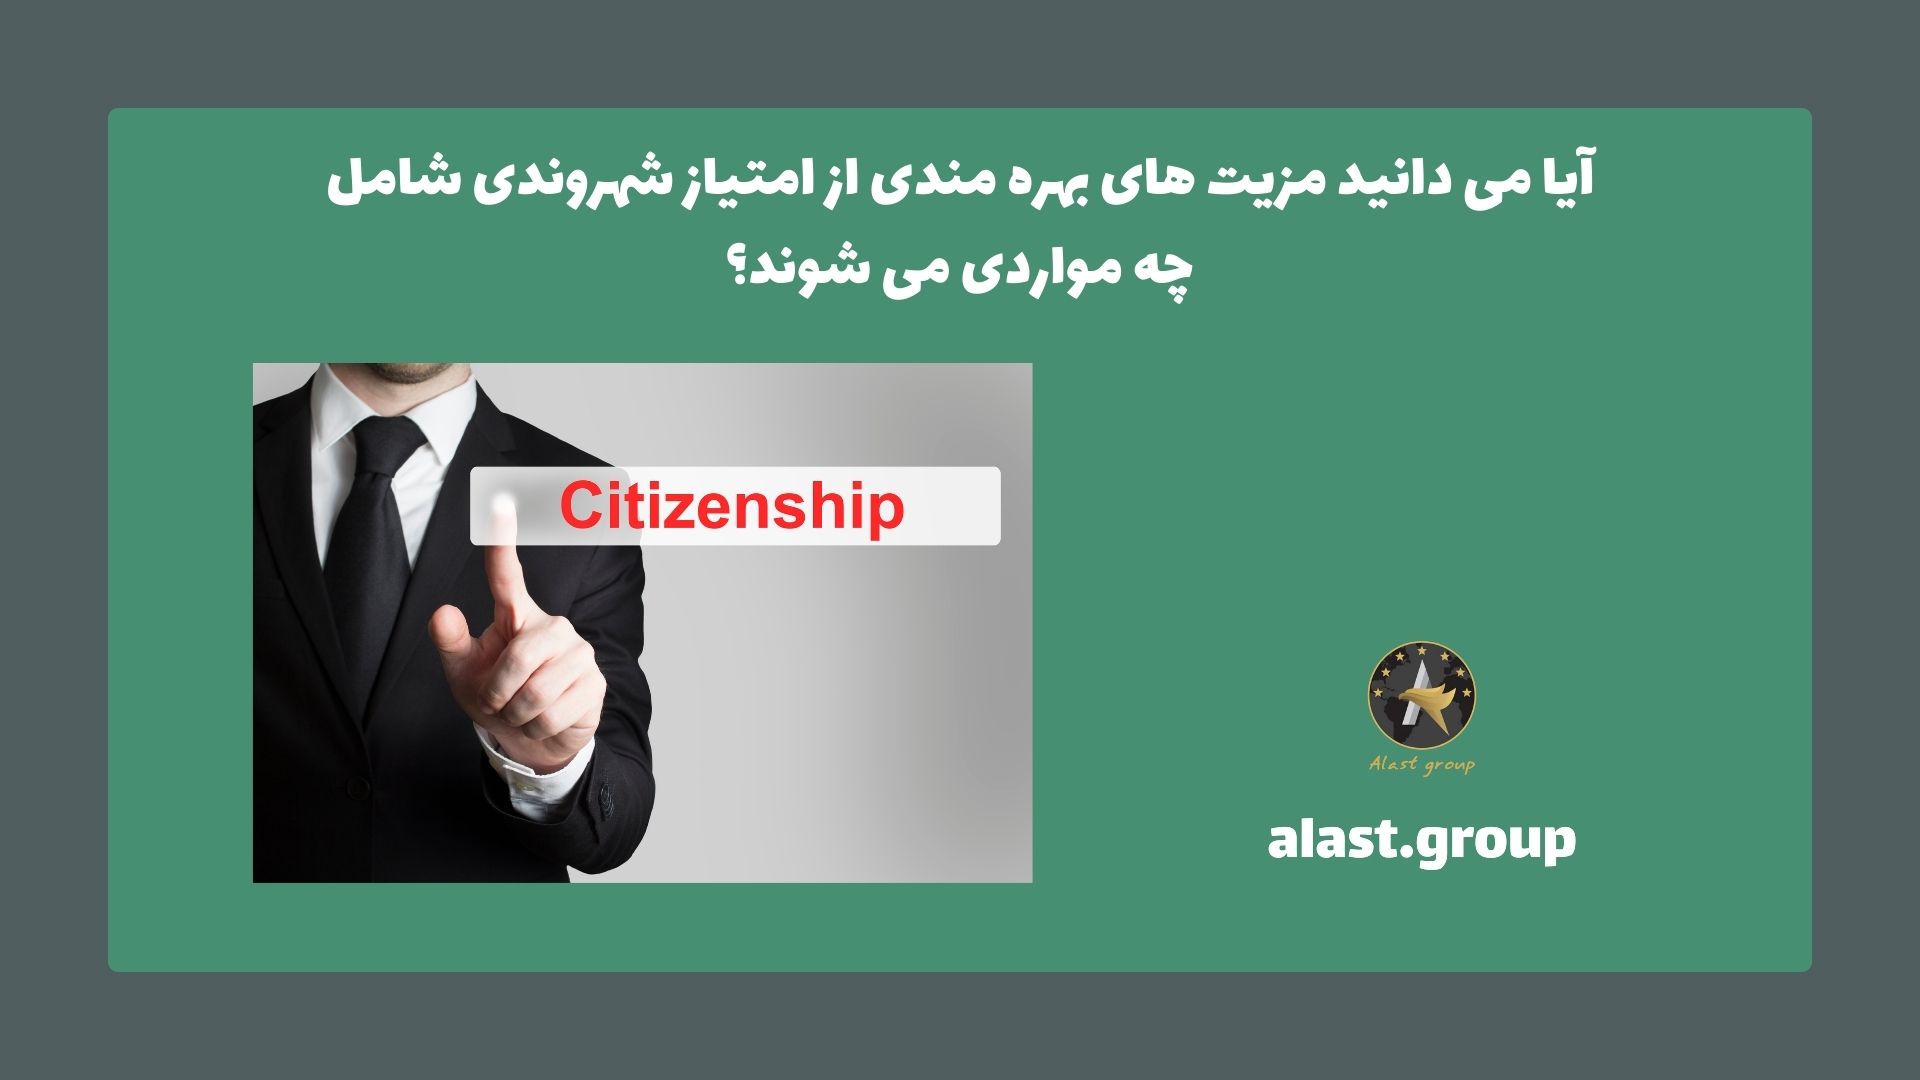 آیا می دانید مزیت های بهره مندی از امتیاز شهروندی شامل چه مواردی می شوند؟